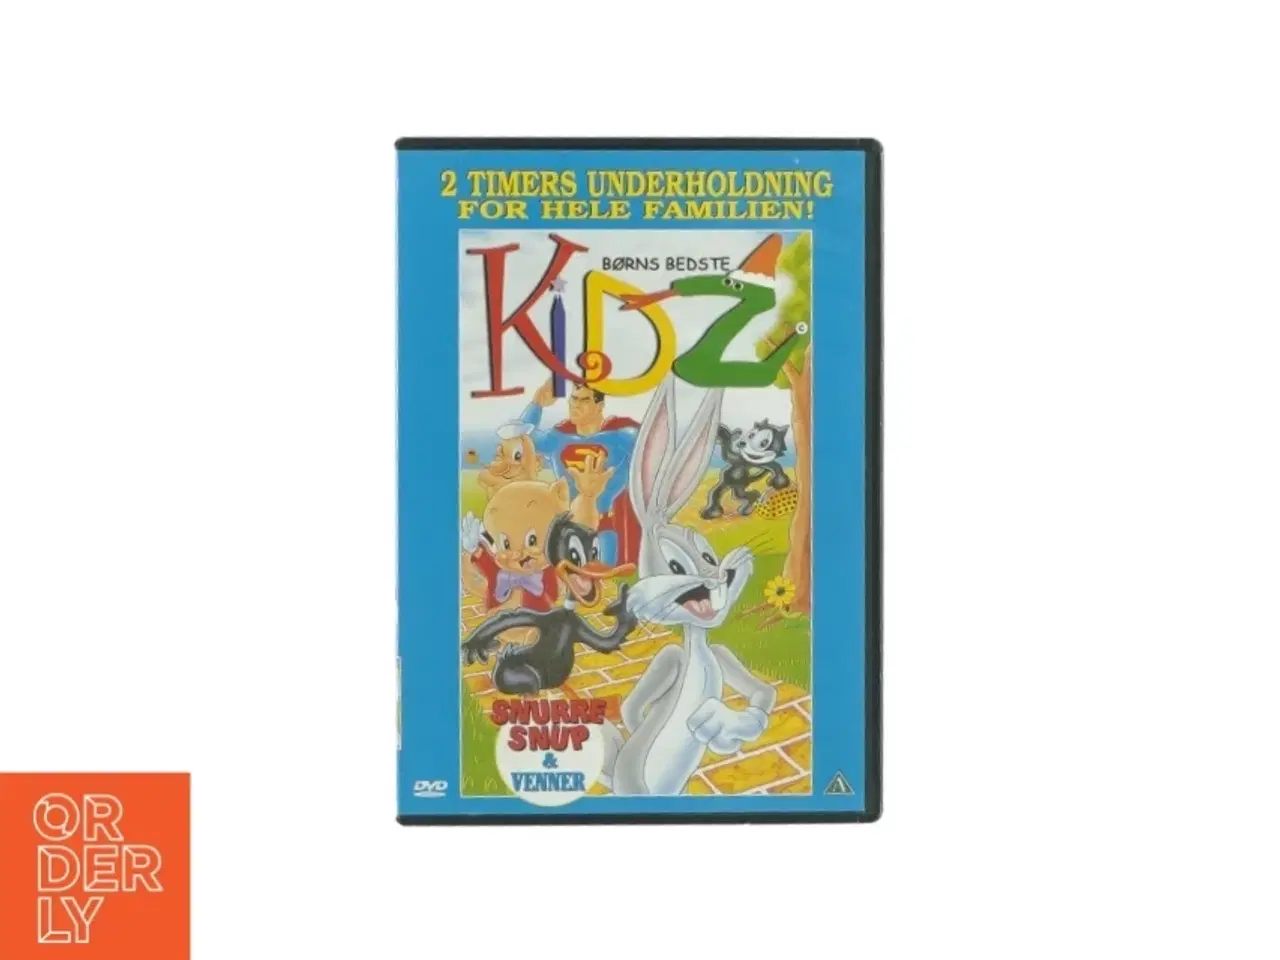 Billede 1 - Kidz - børns bedste (DVD)